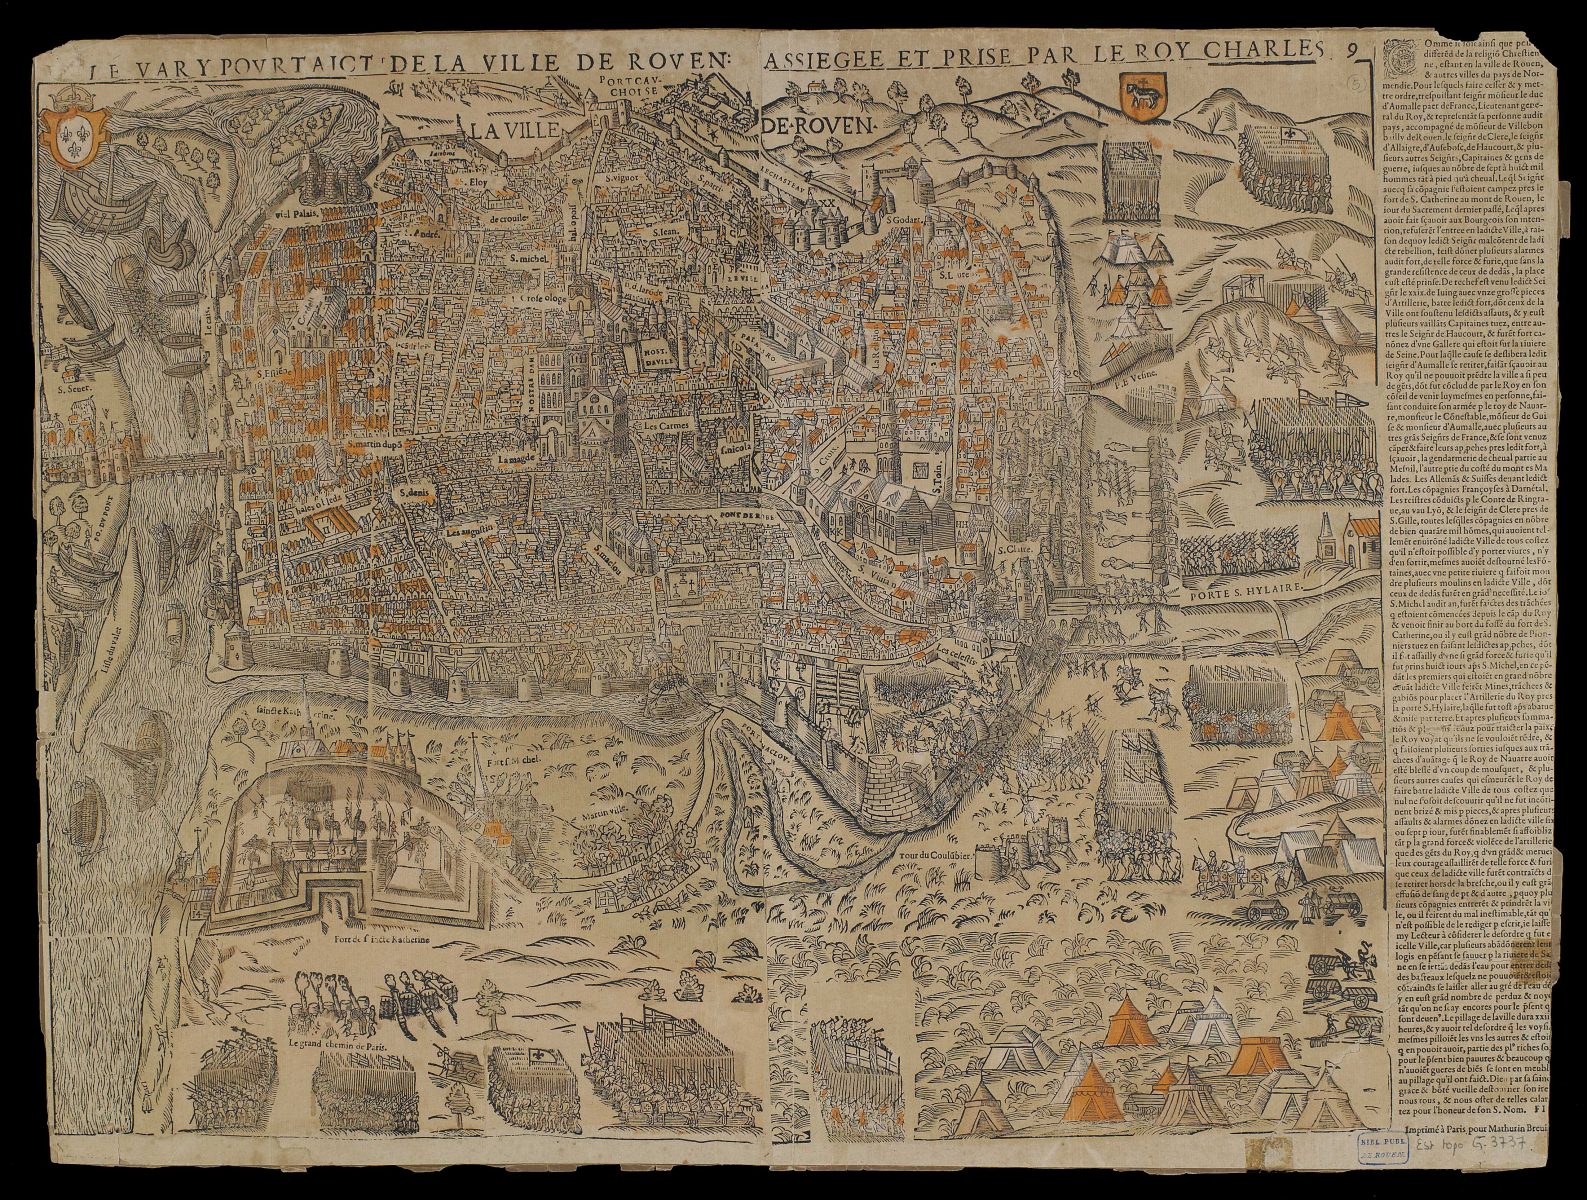 Plan de Rouen assiégée et prise par Charles IX